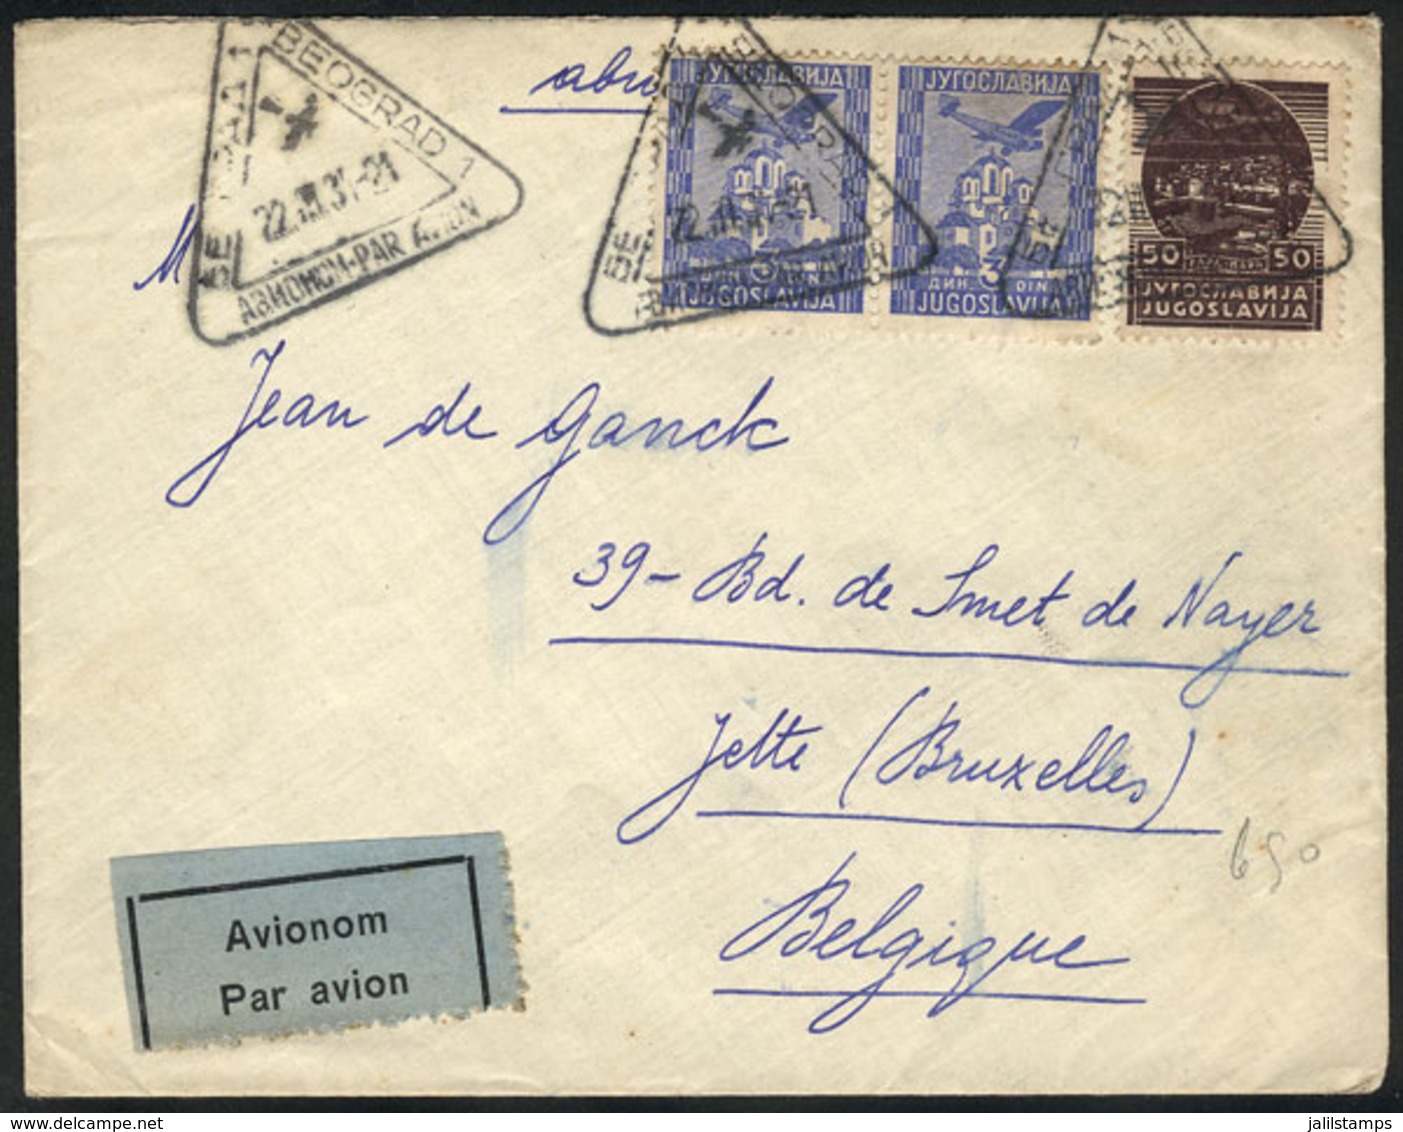 YUGOSLAVIA: 22/AU/1934 BEOGRAD - ZEMUN: Airmail Cover To Belgium, Very Fine Quality! - Briefe U. Dokumente